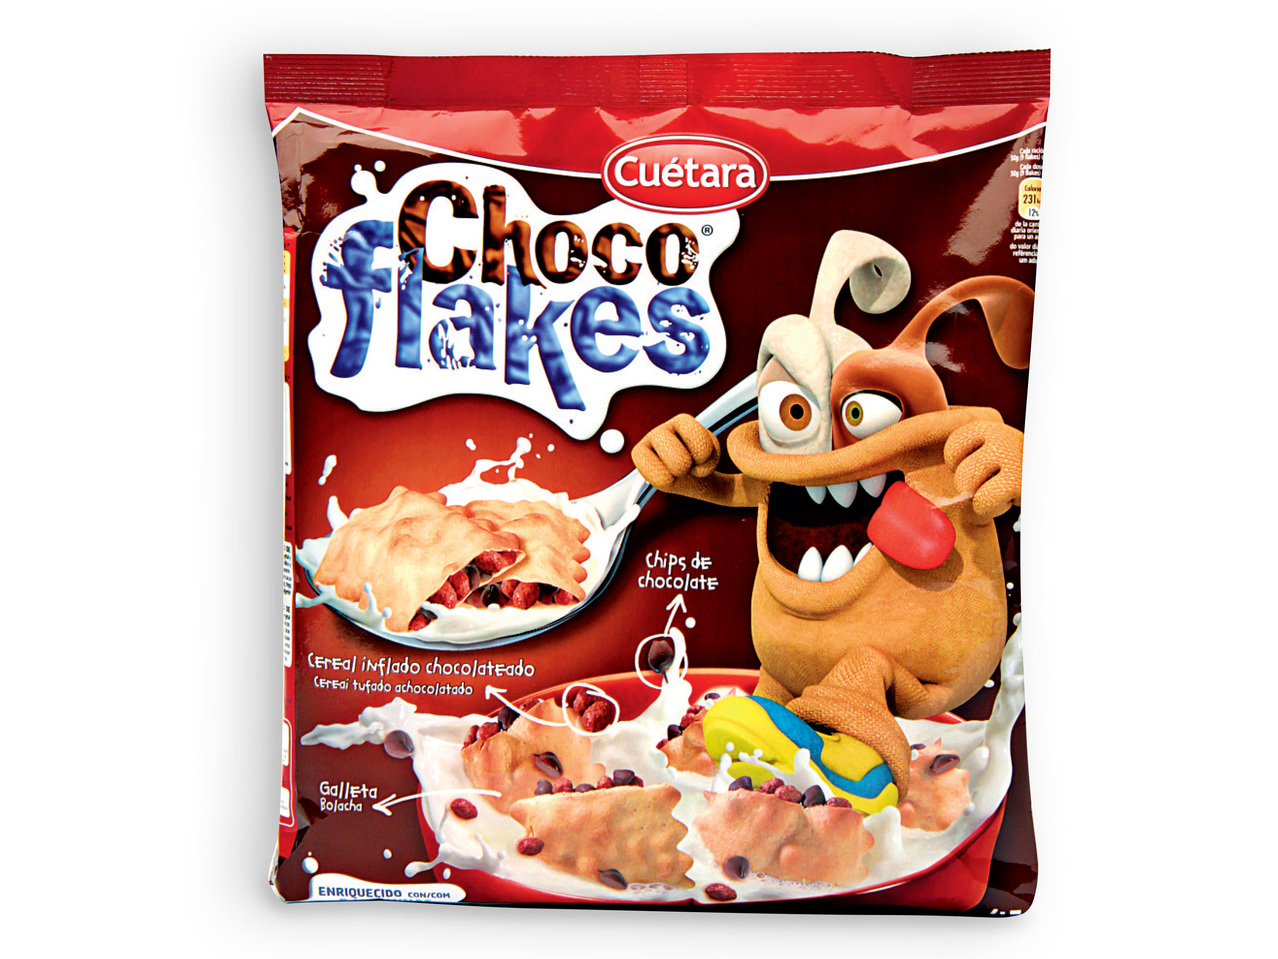 CUÉTARA(R) Choco Flakes